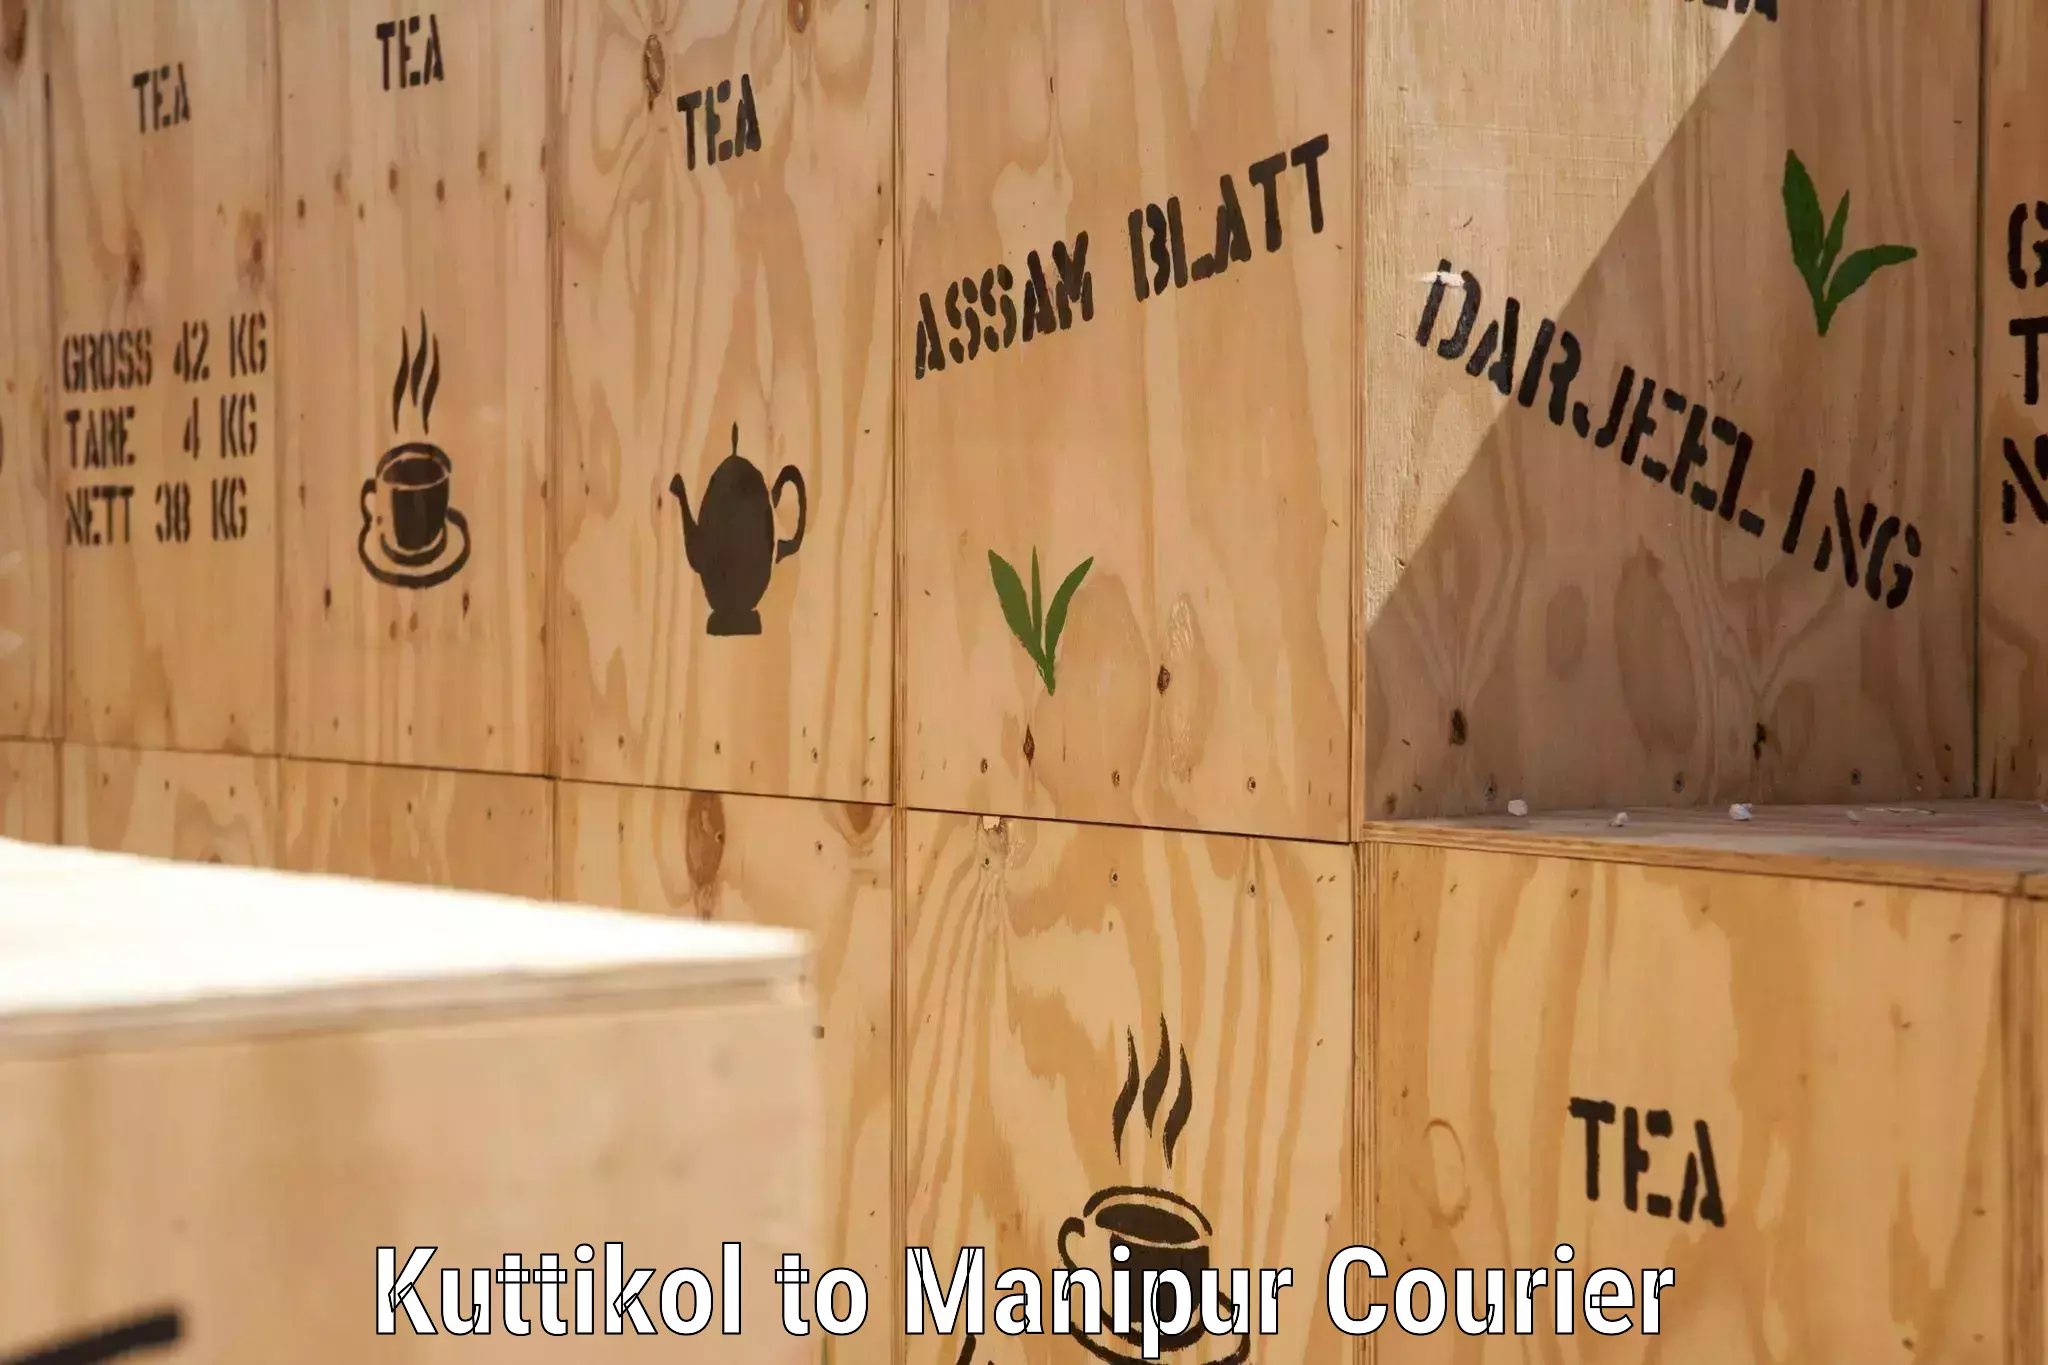 Multi-city courier Kuttikol to Kanti